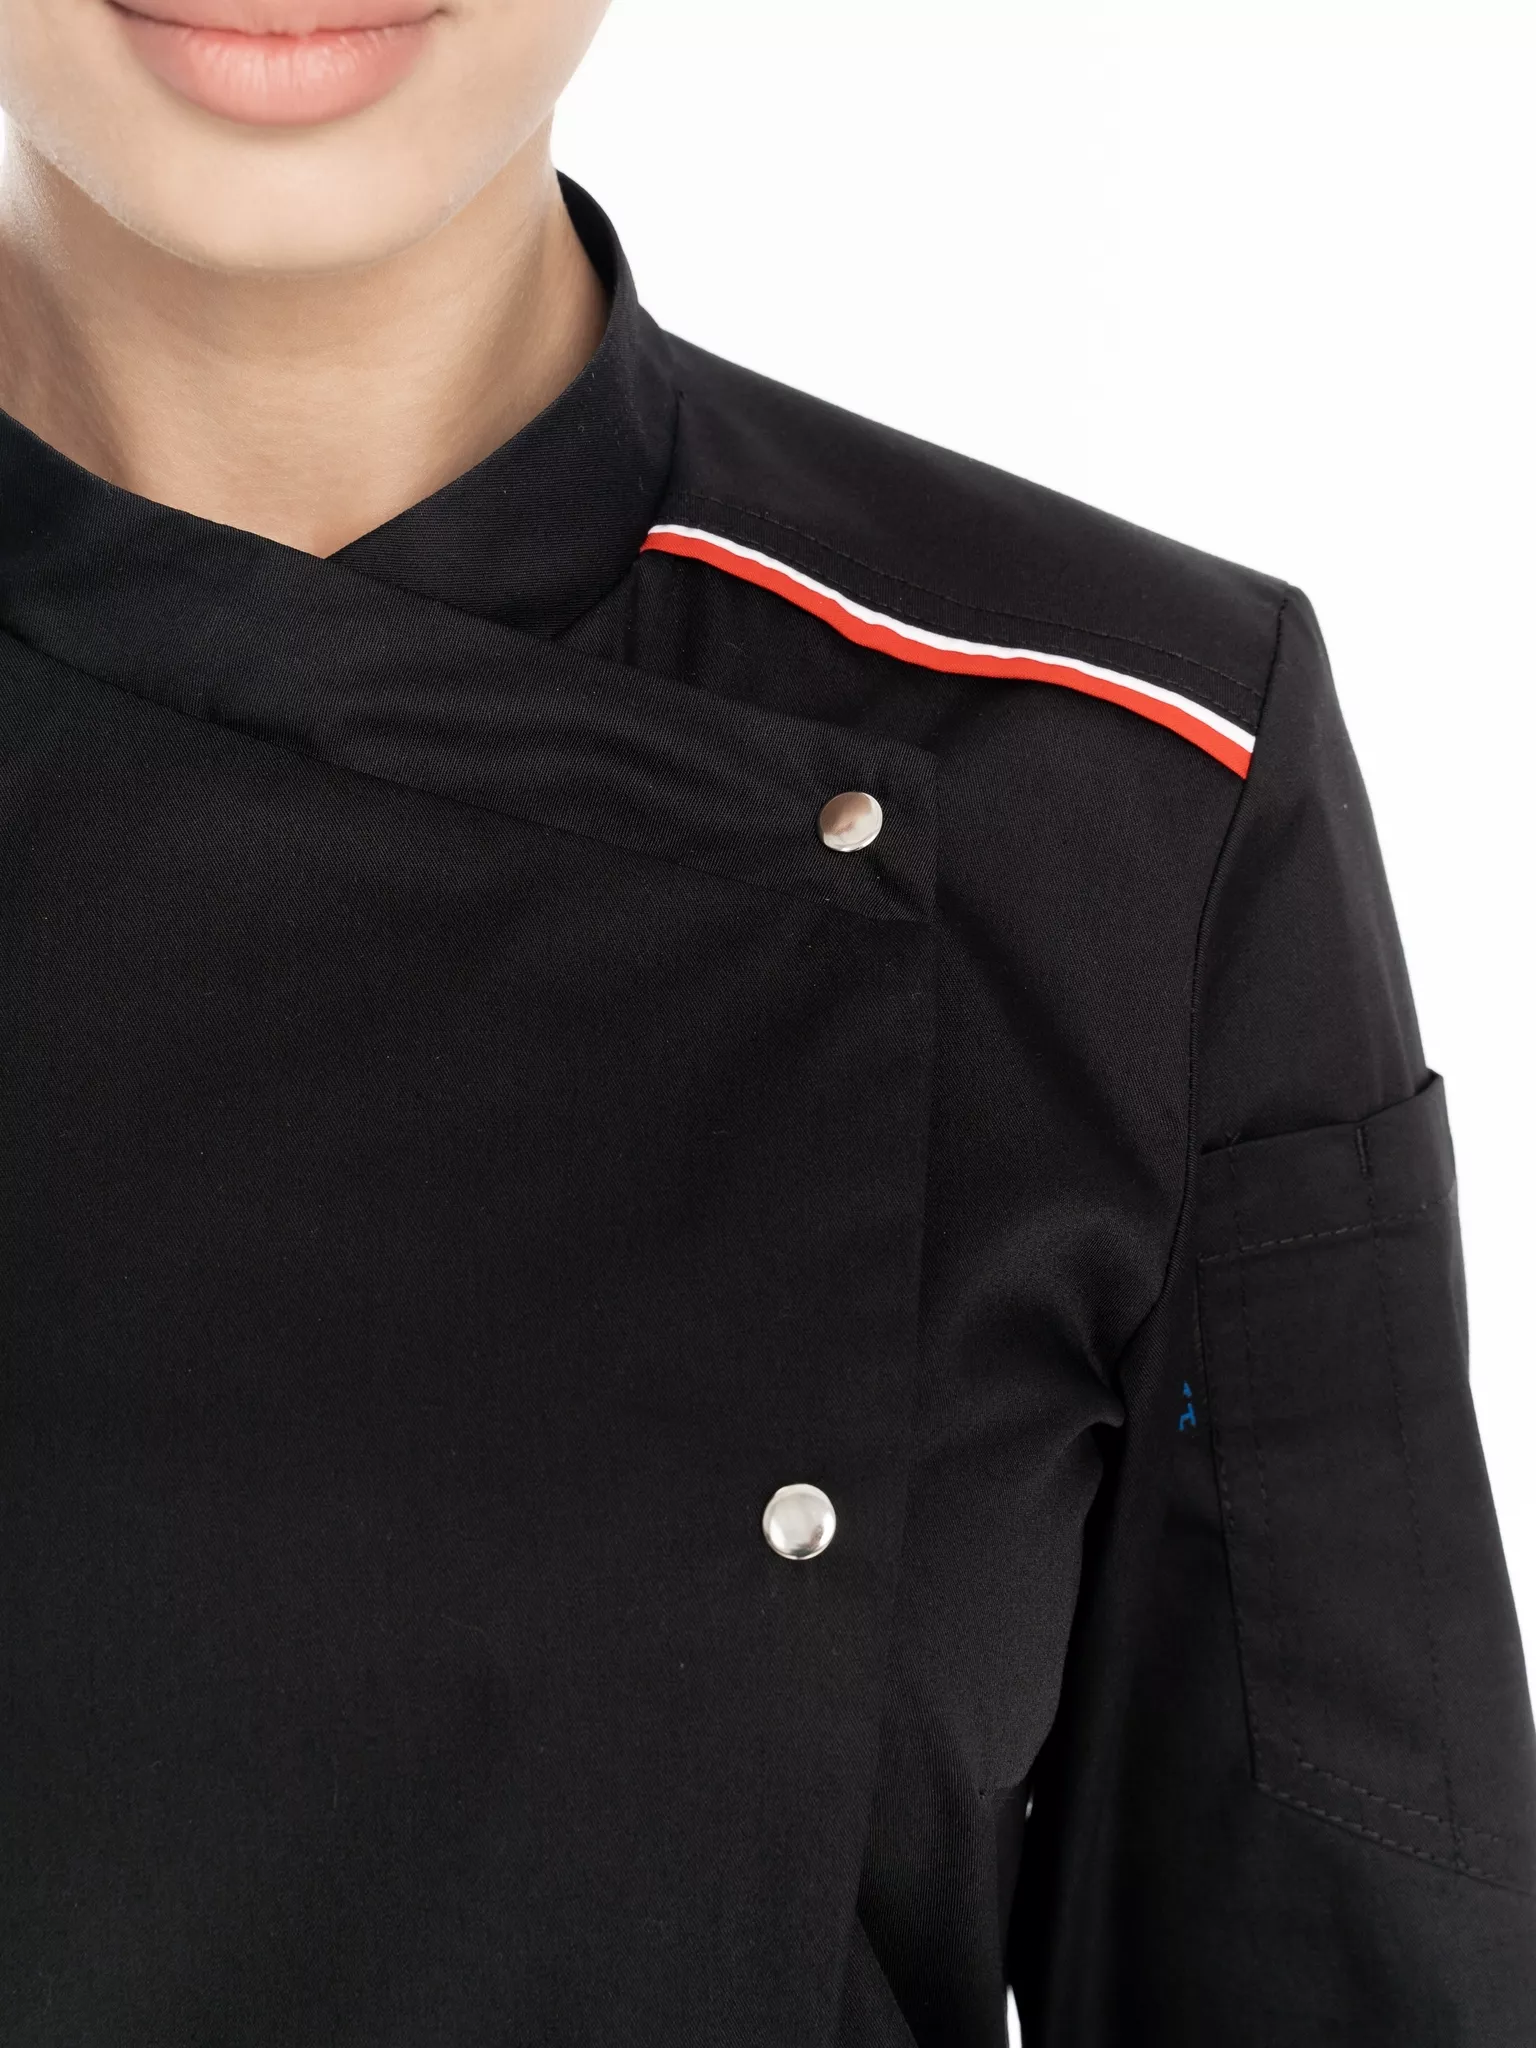 Куртка повара женская КМ.591 р.44-46, рост 170-176 (цвет черный, кант красный, белый)